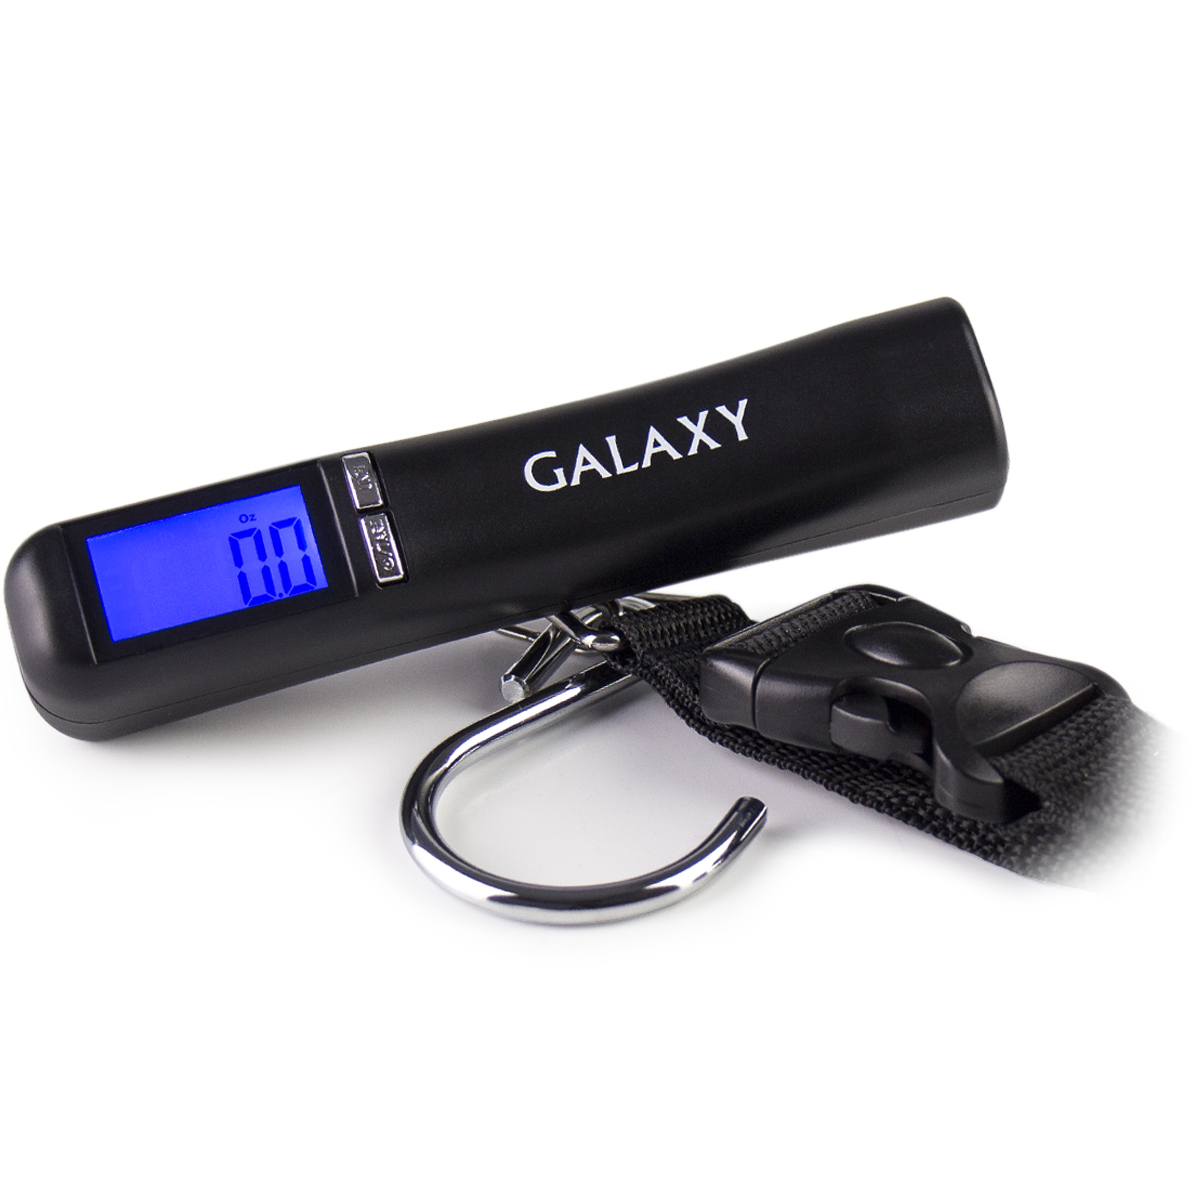 Galaxy GL 2830, Black безмен электронный